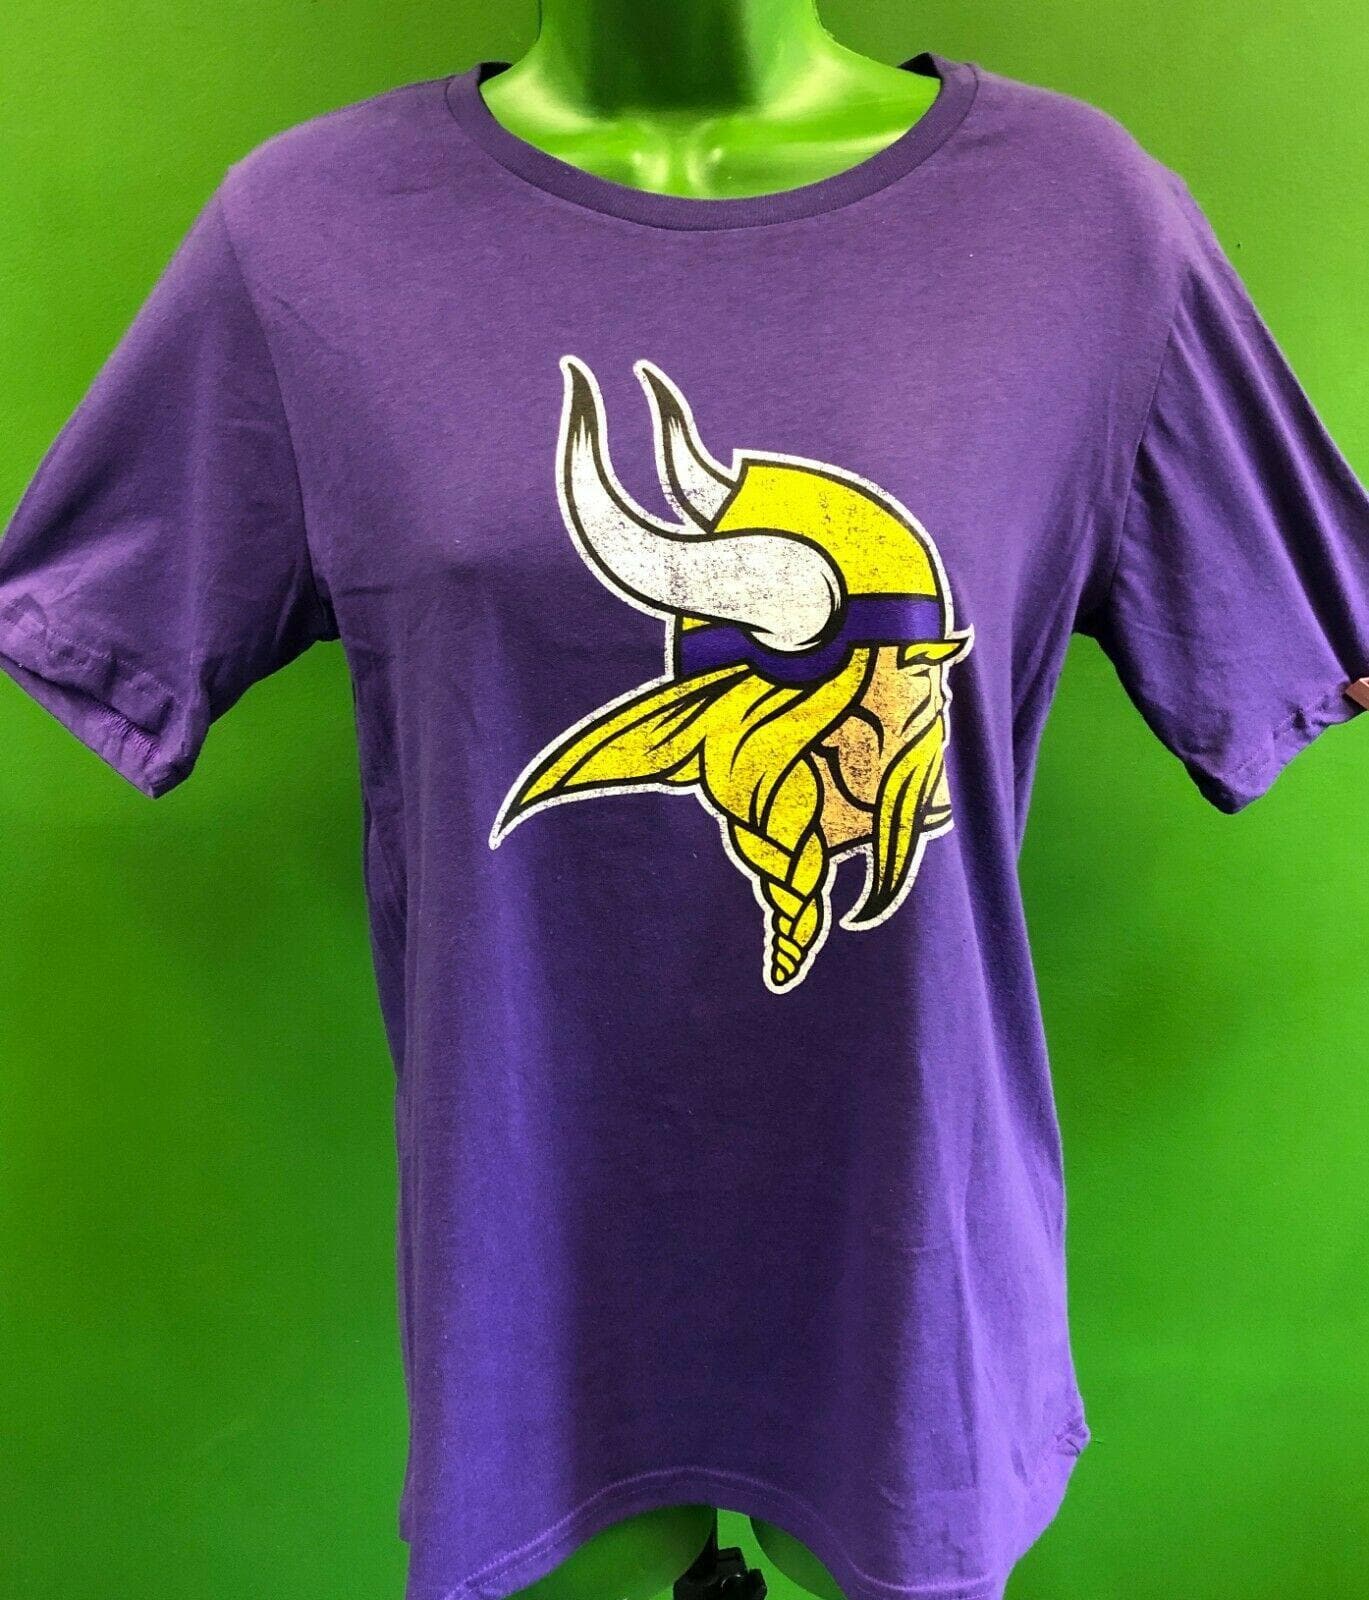 NFL Minnesota Vikings Weathered Logo T-Shirt Youth Large 14-16 NWT